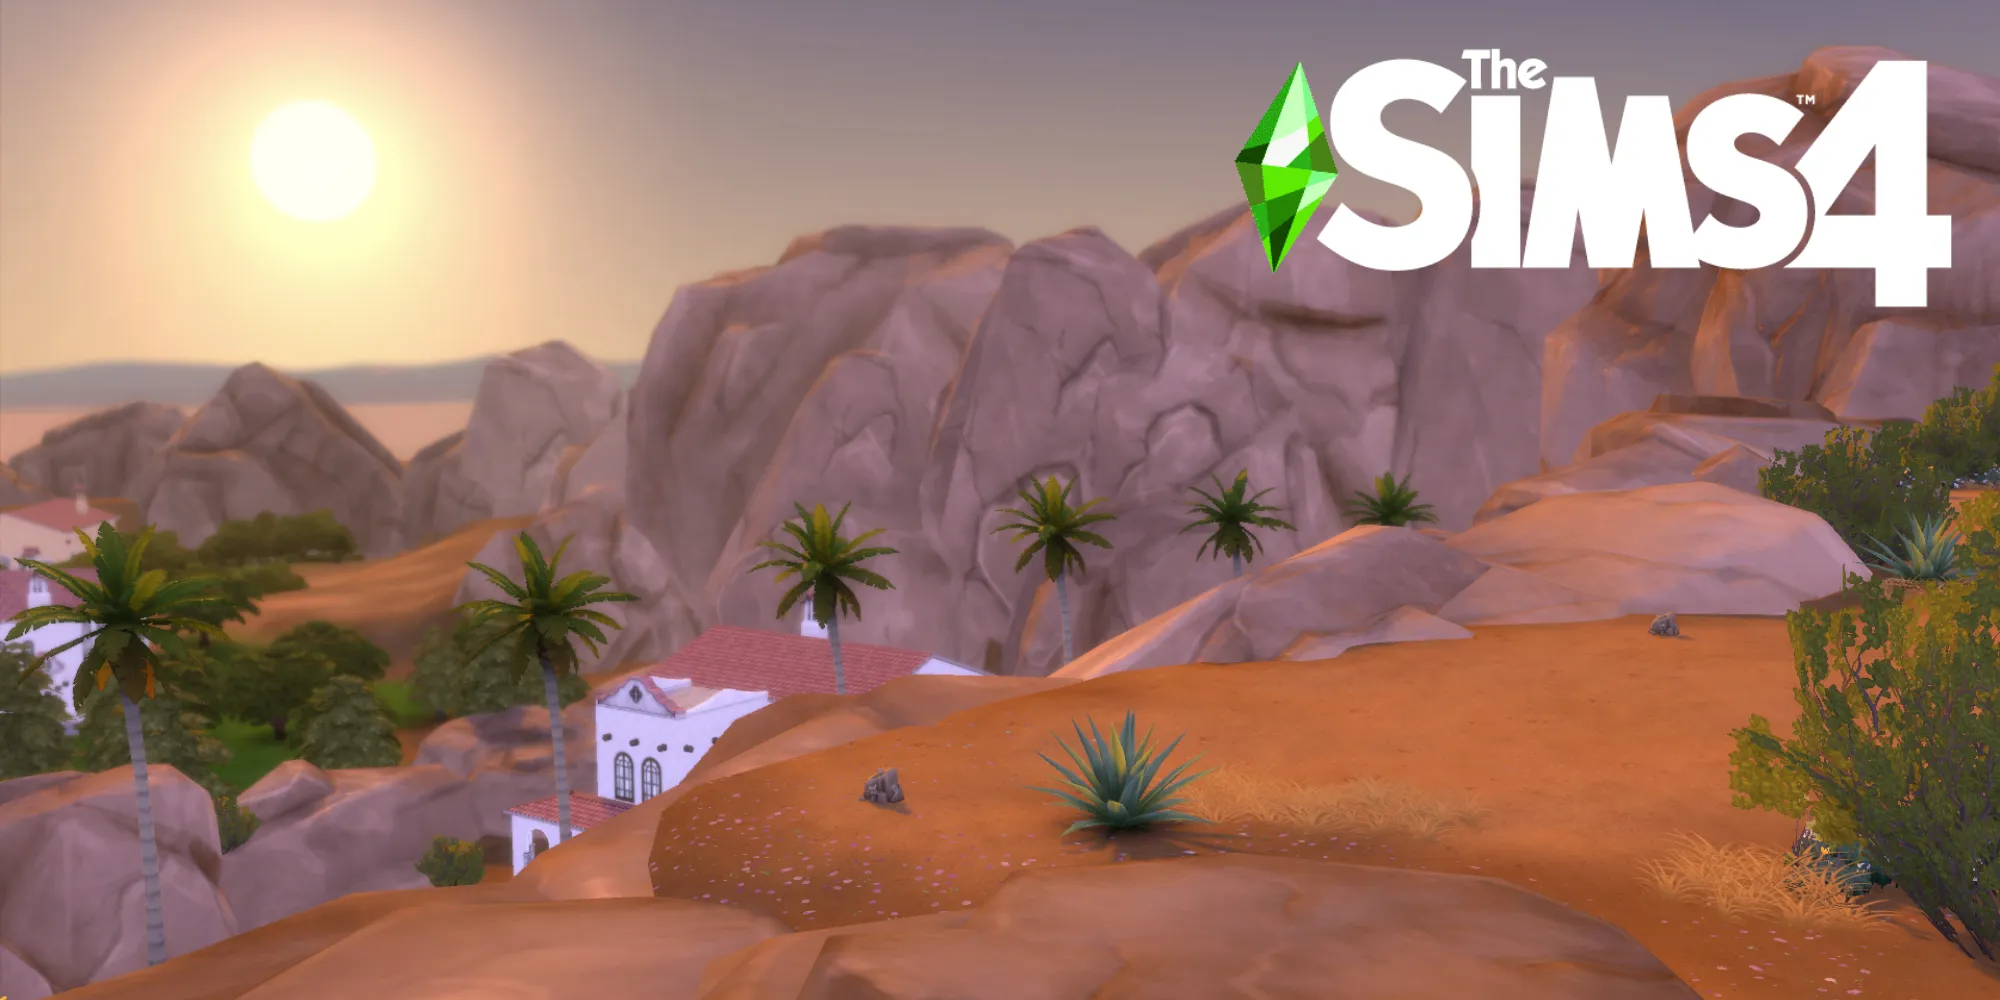 绿洲泉是《模拟人生4》中的基础游戏沙漠世界，夏季非常炎热。